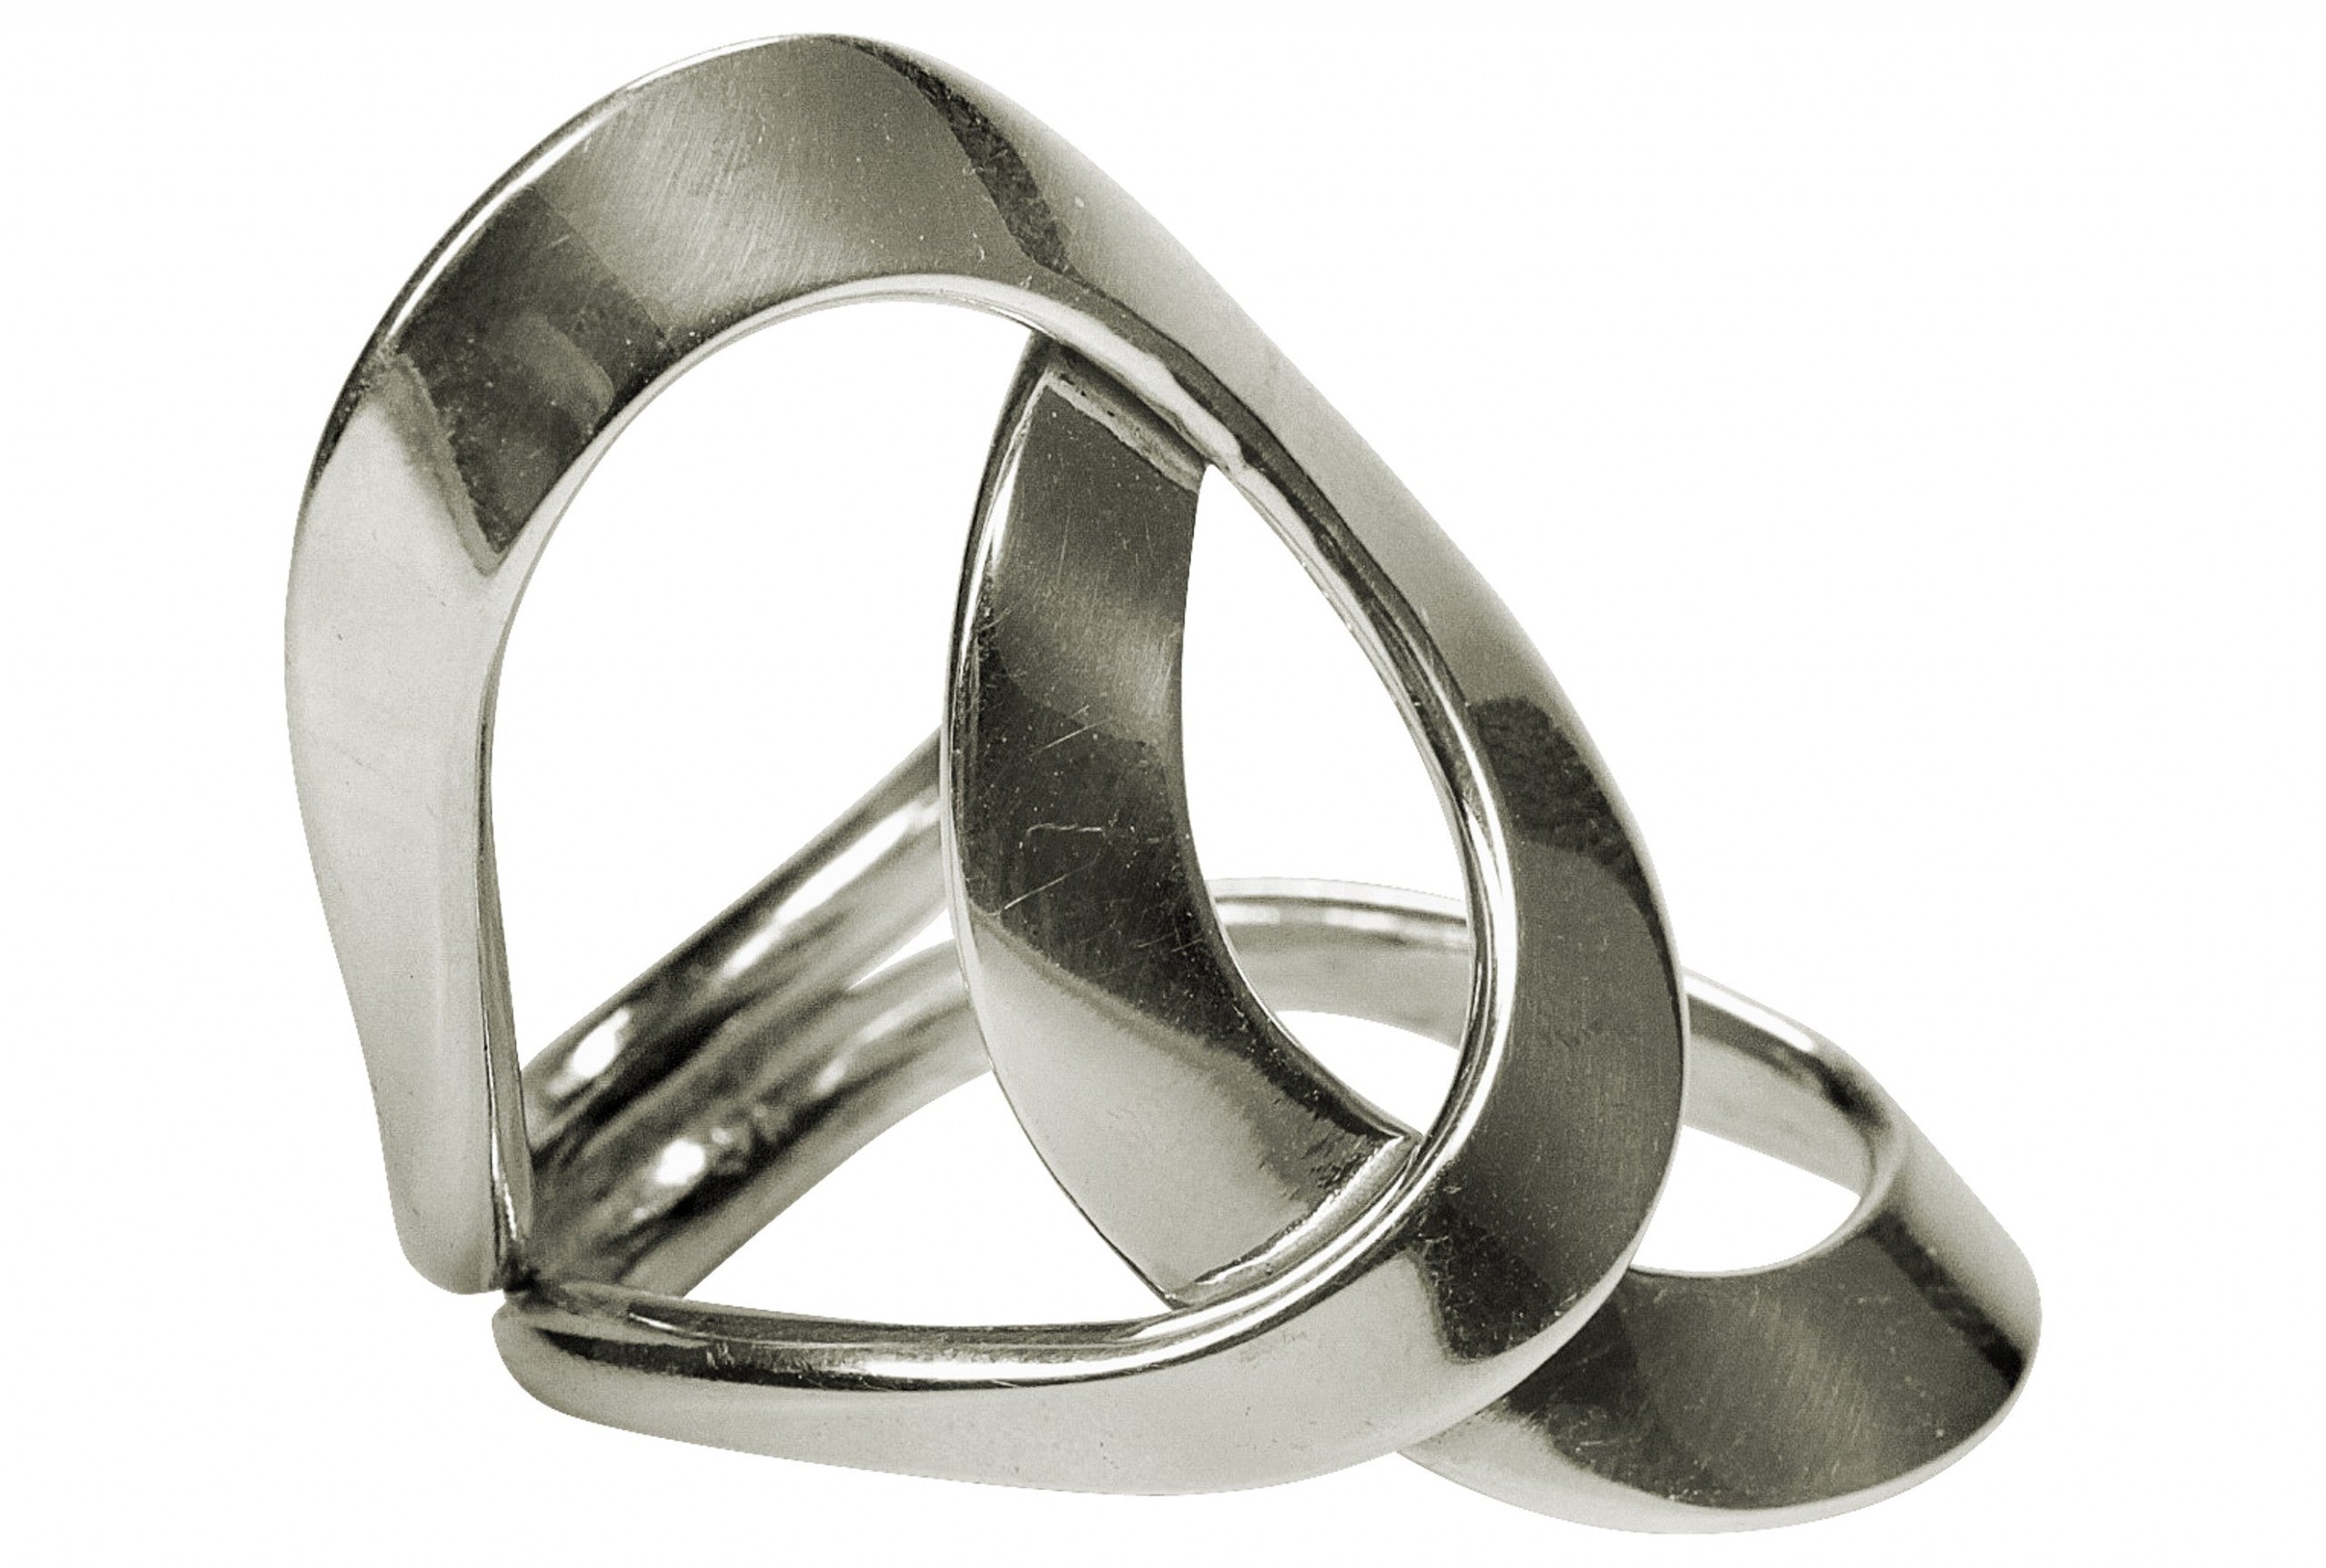 Geschmiedeter Damenring aus zwei Kreisen, die kunstvoll ineinander verschlungen sind. Der Ring ist geschmiedet und hat eine glänzende Oberfläche.